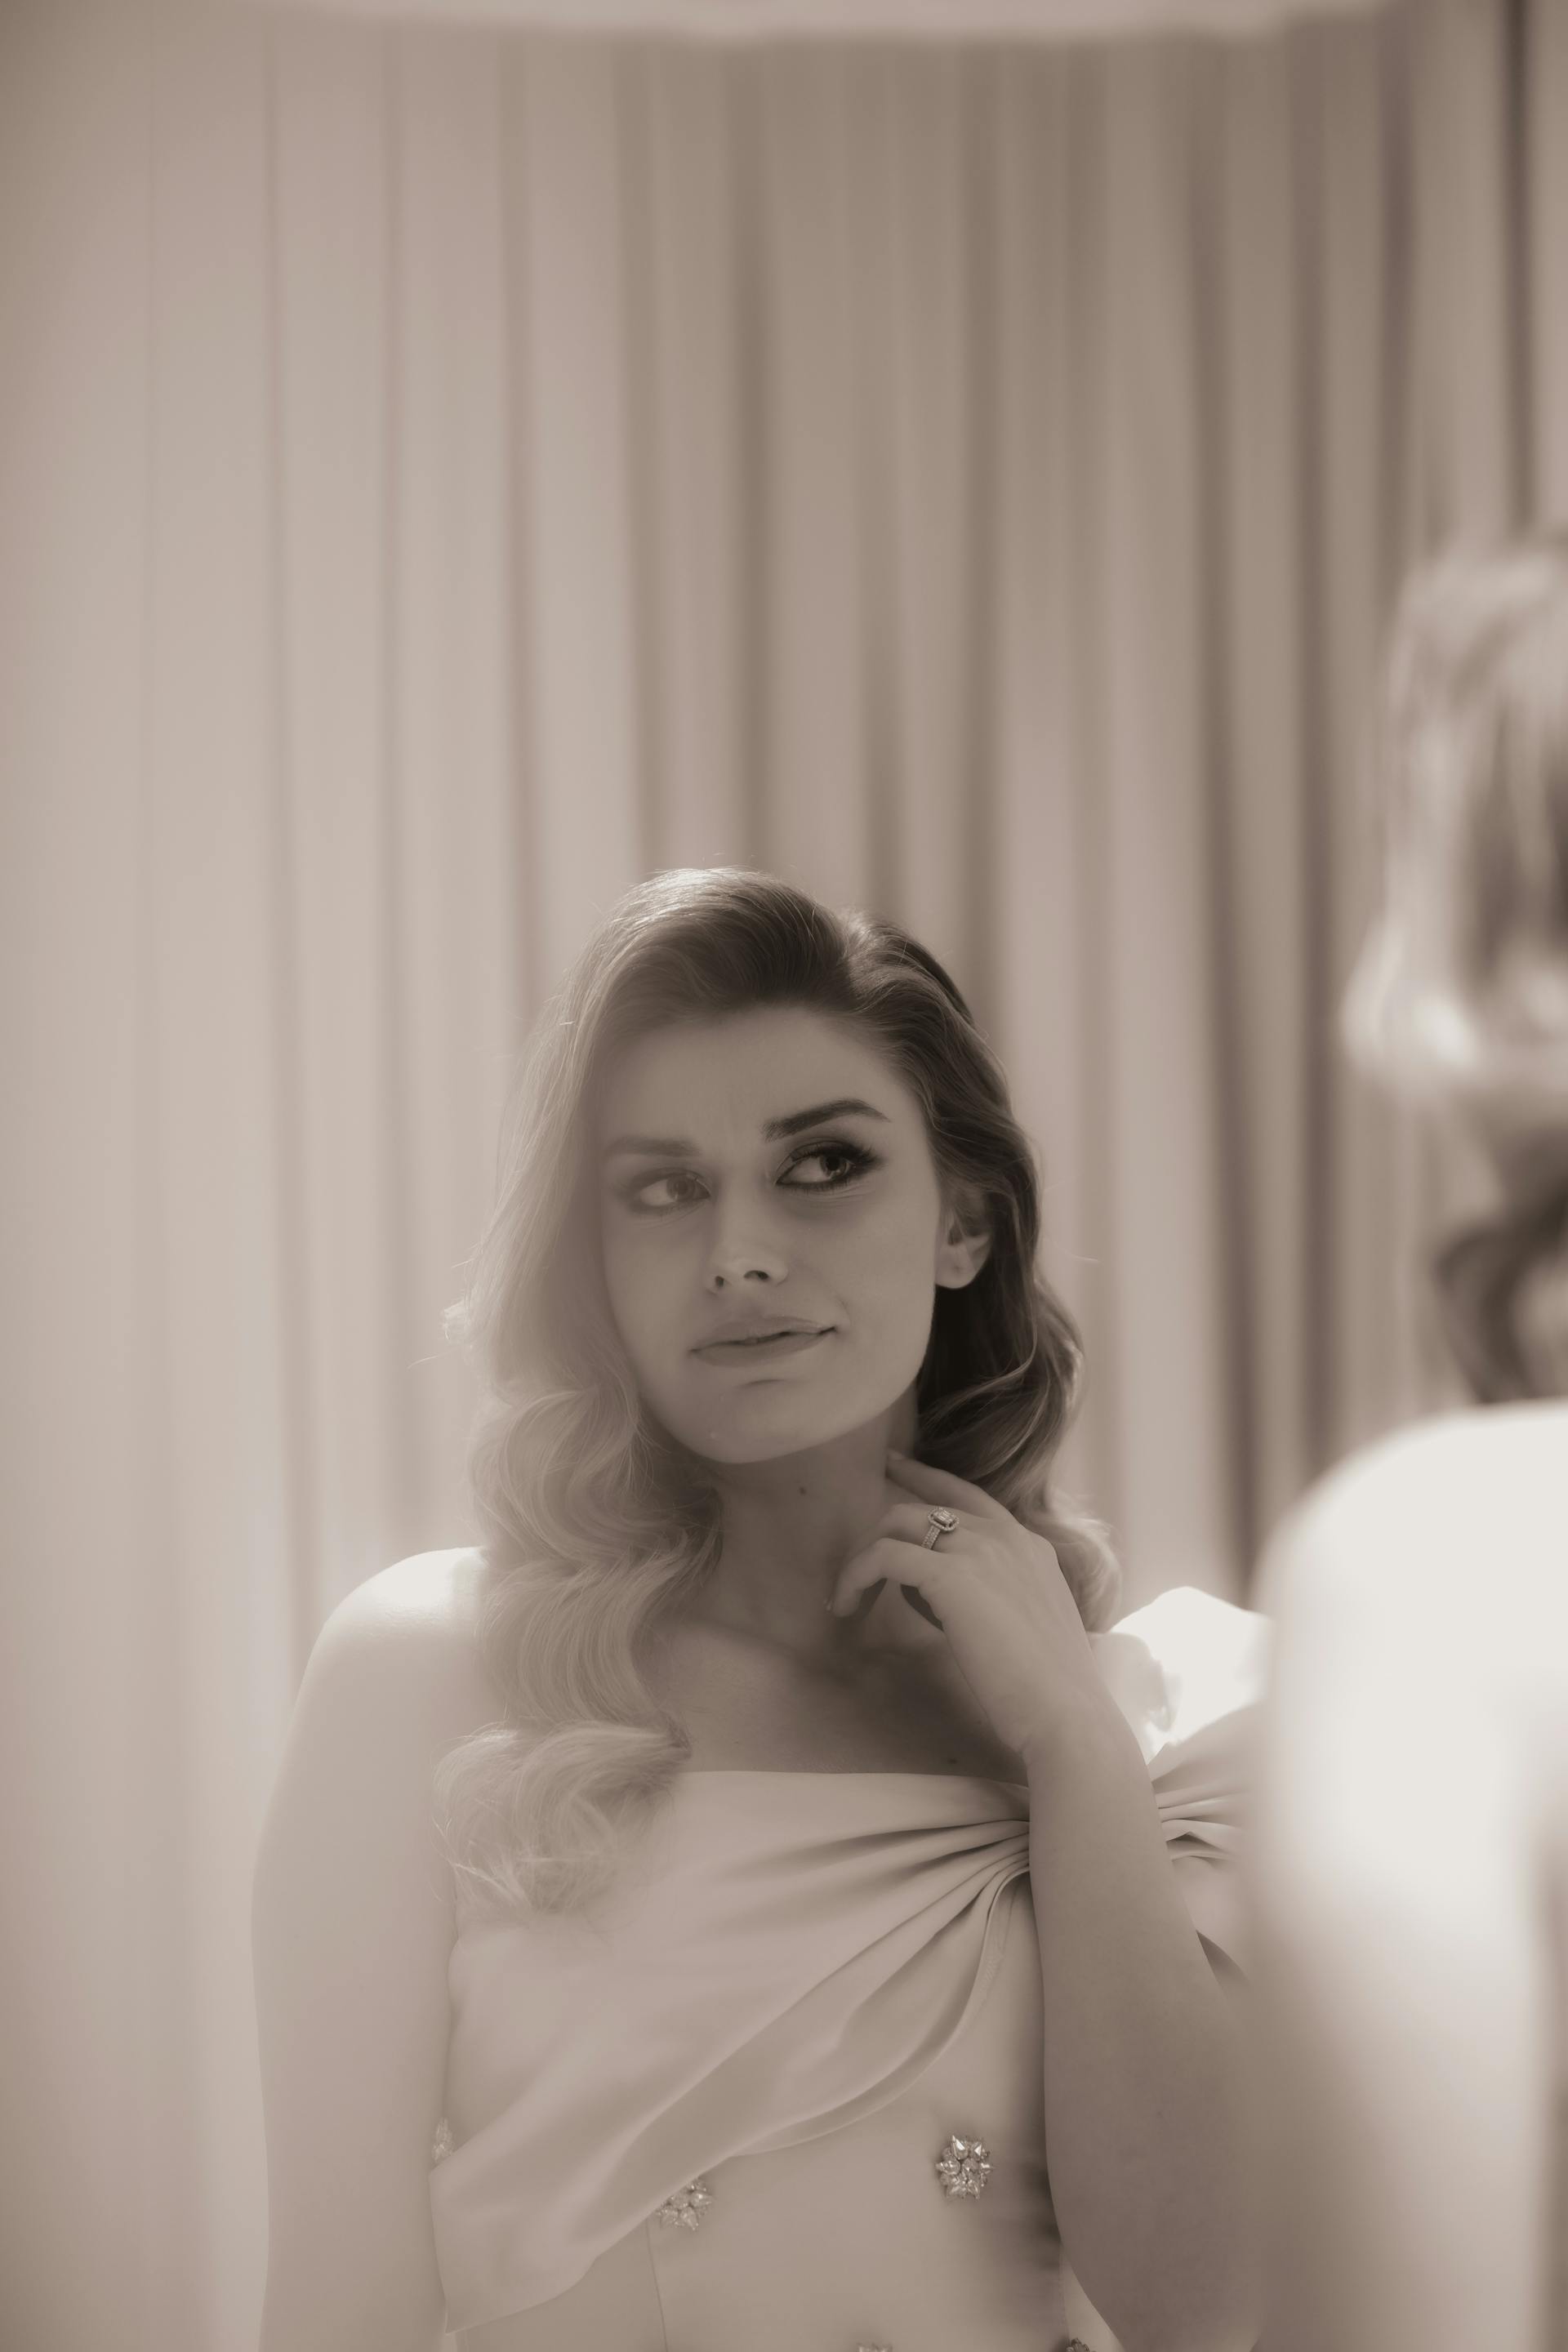 Foto en escala de grises de una novia mirándose al espejo | Fuente: Pexels